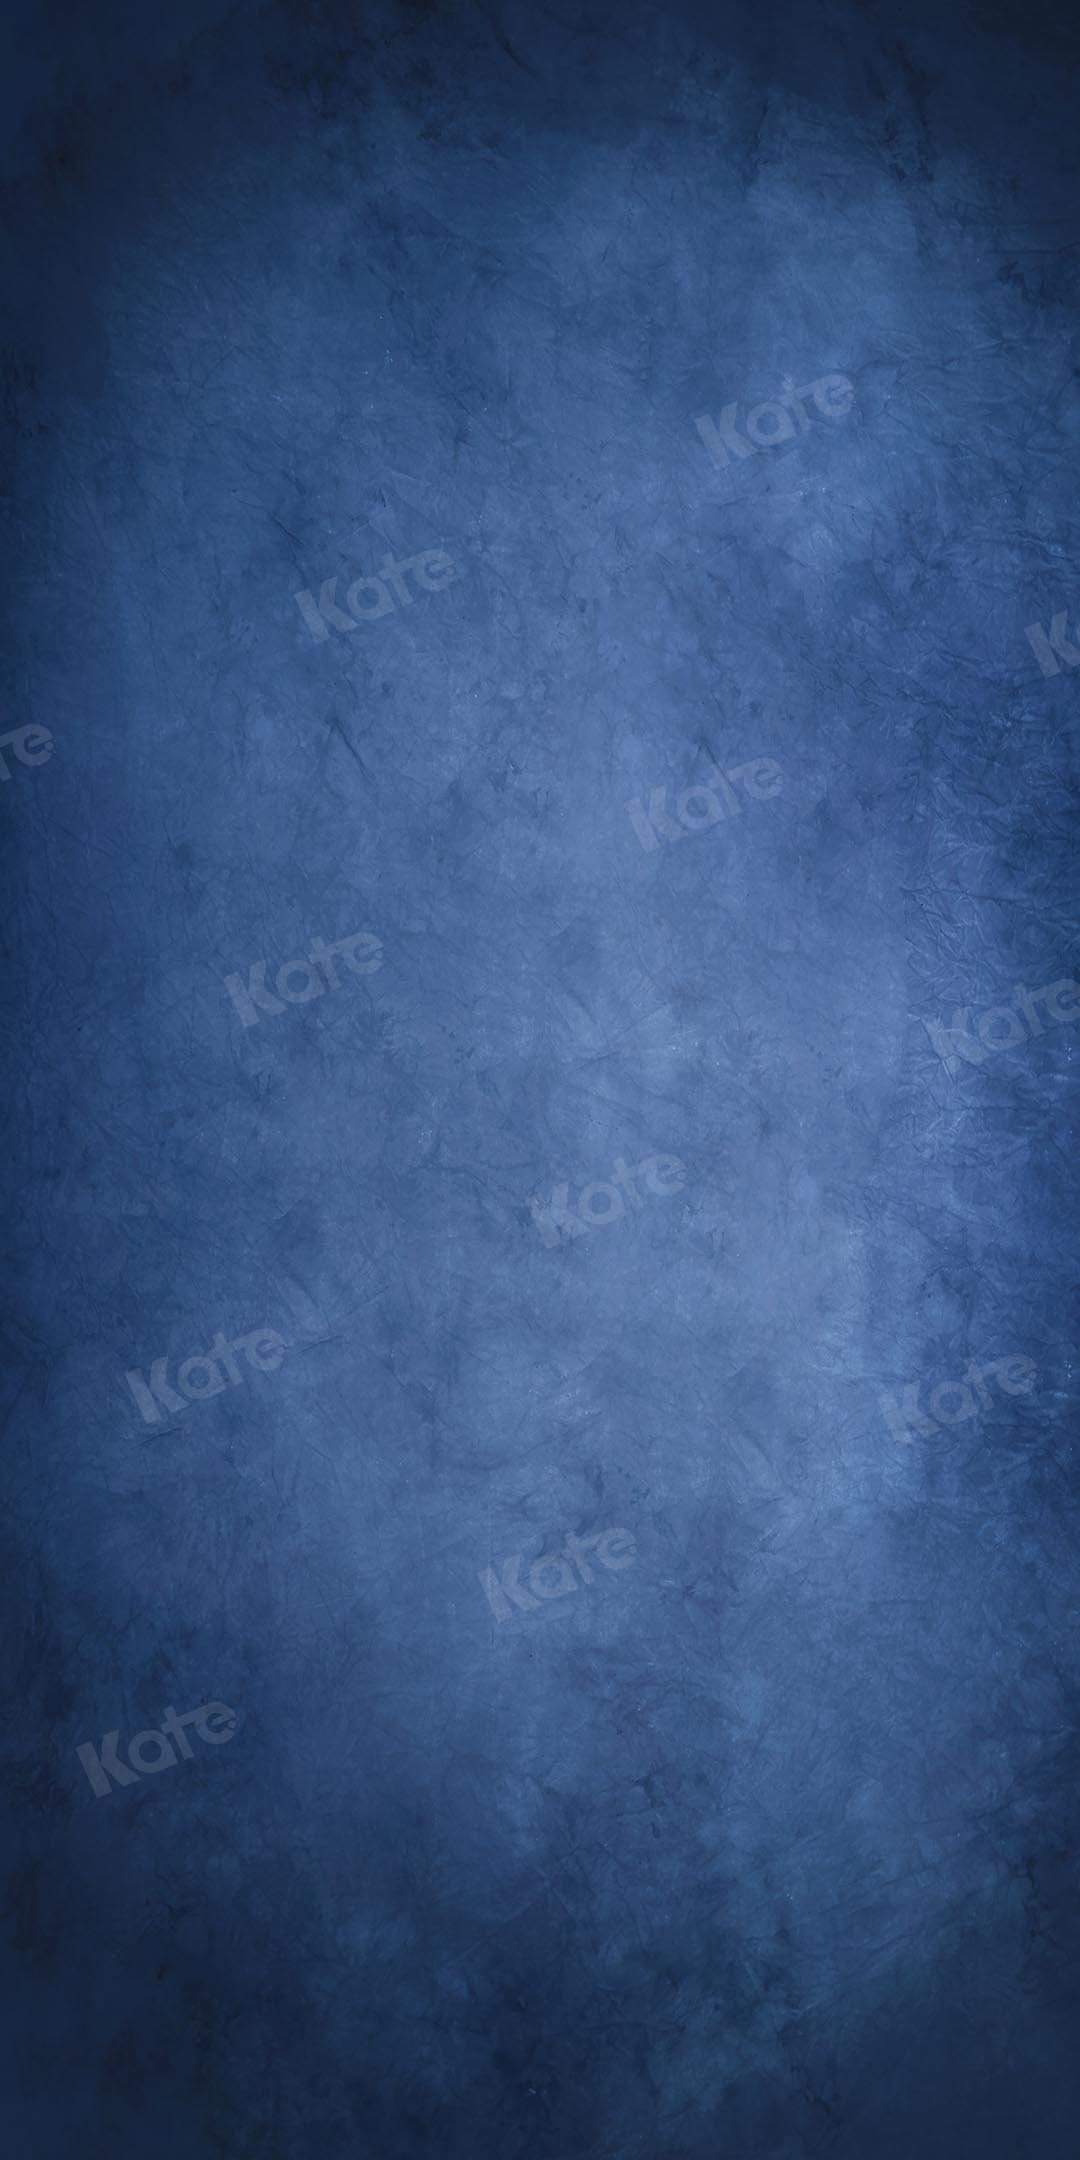 RTS-Kate 写真撮影抽象的な青いオールドマスターの背景設計された Kate Image